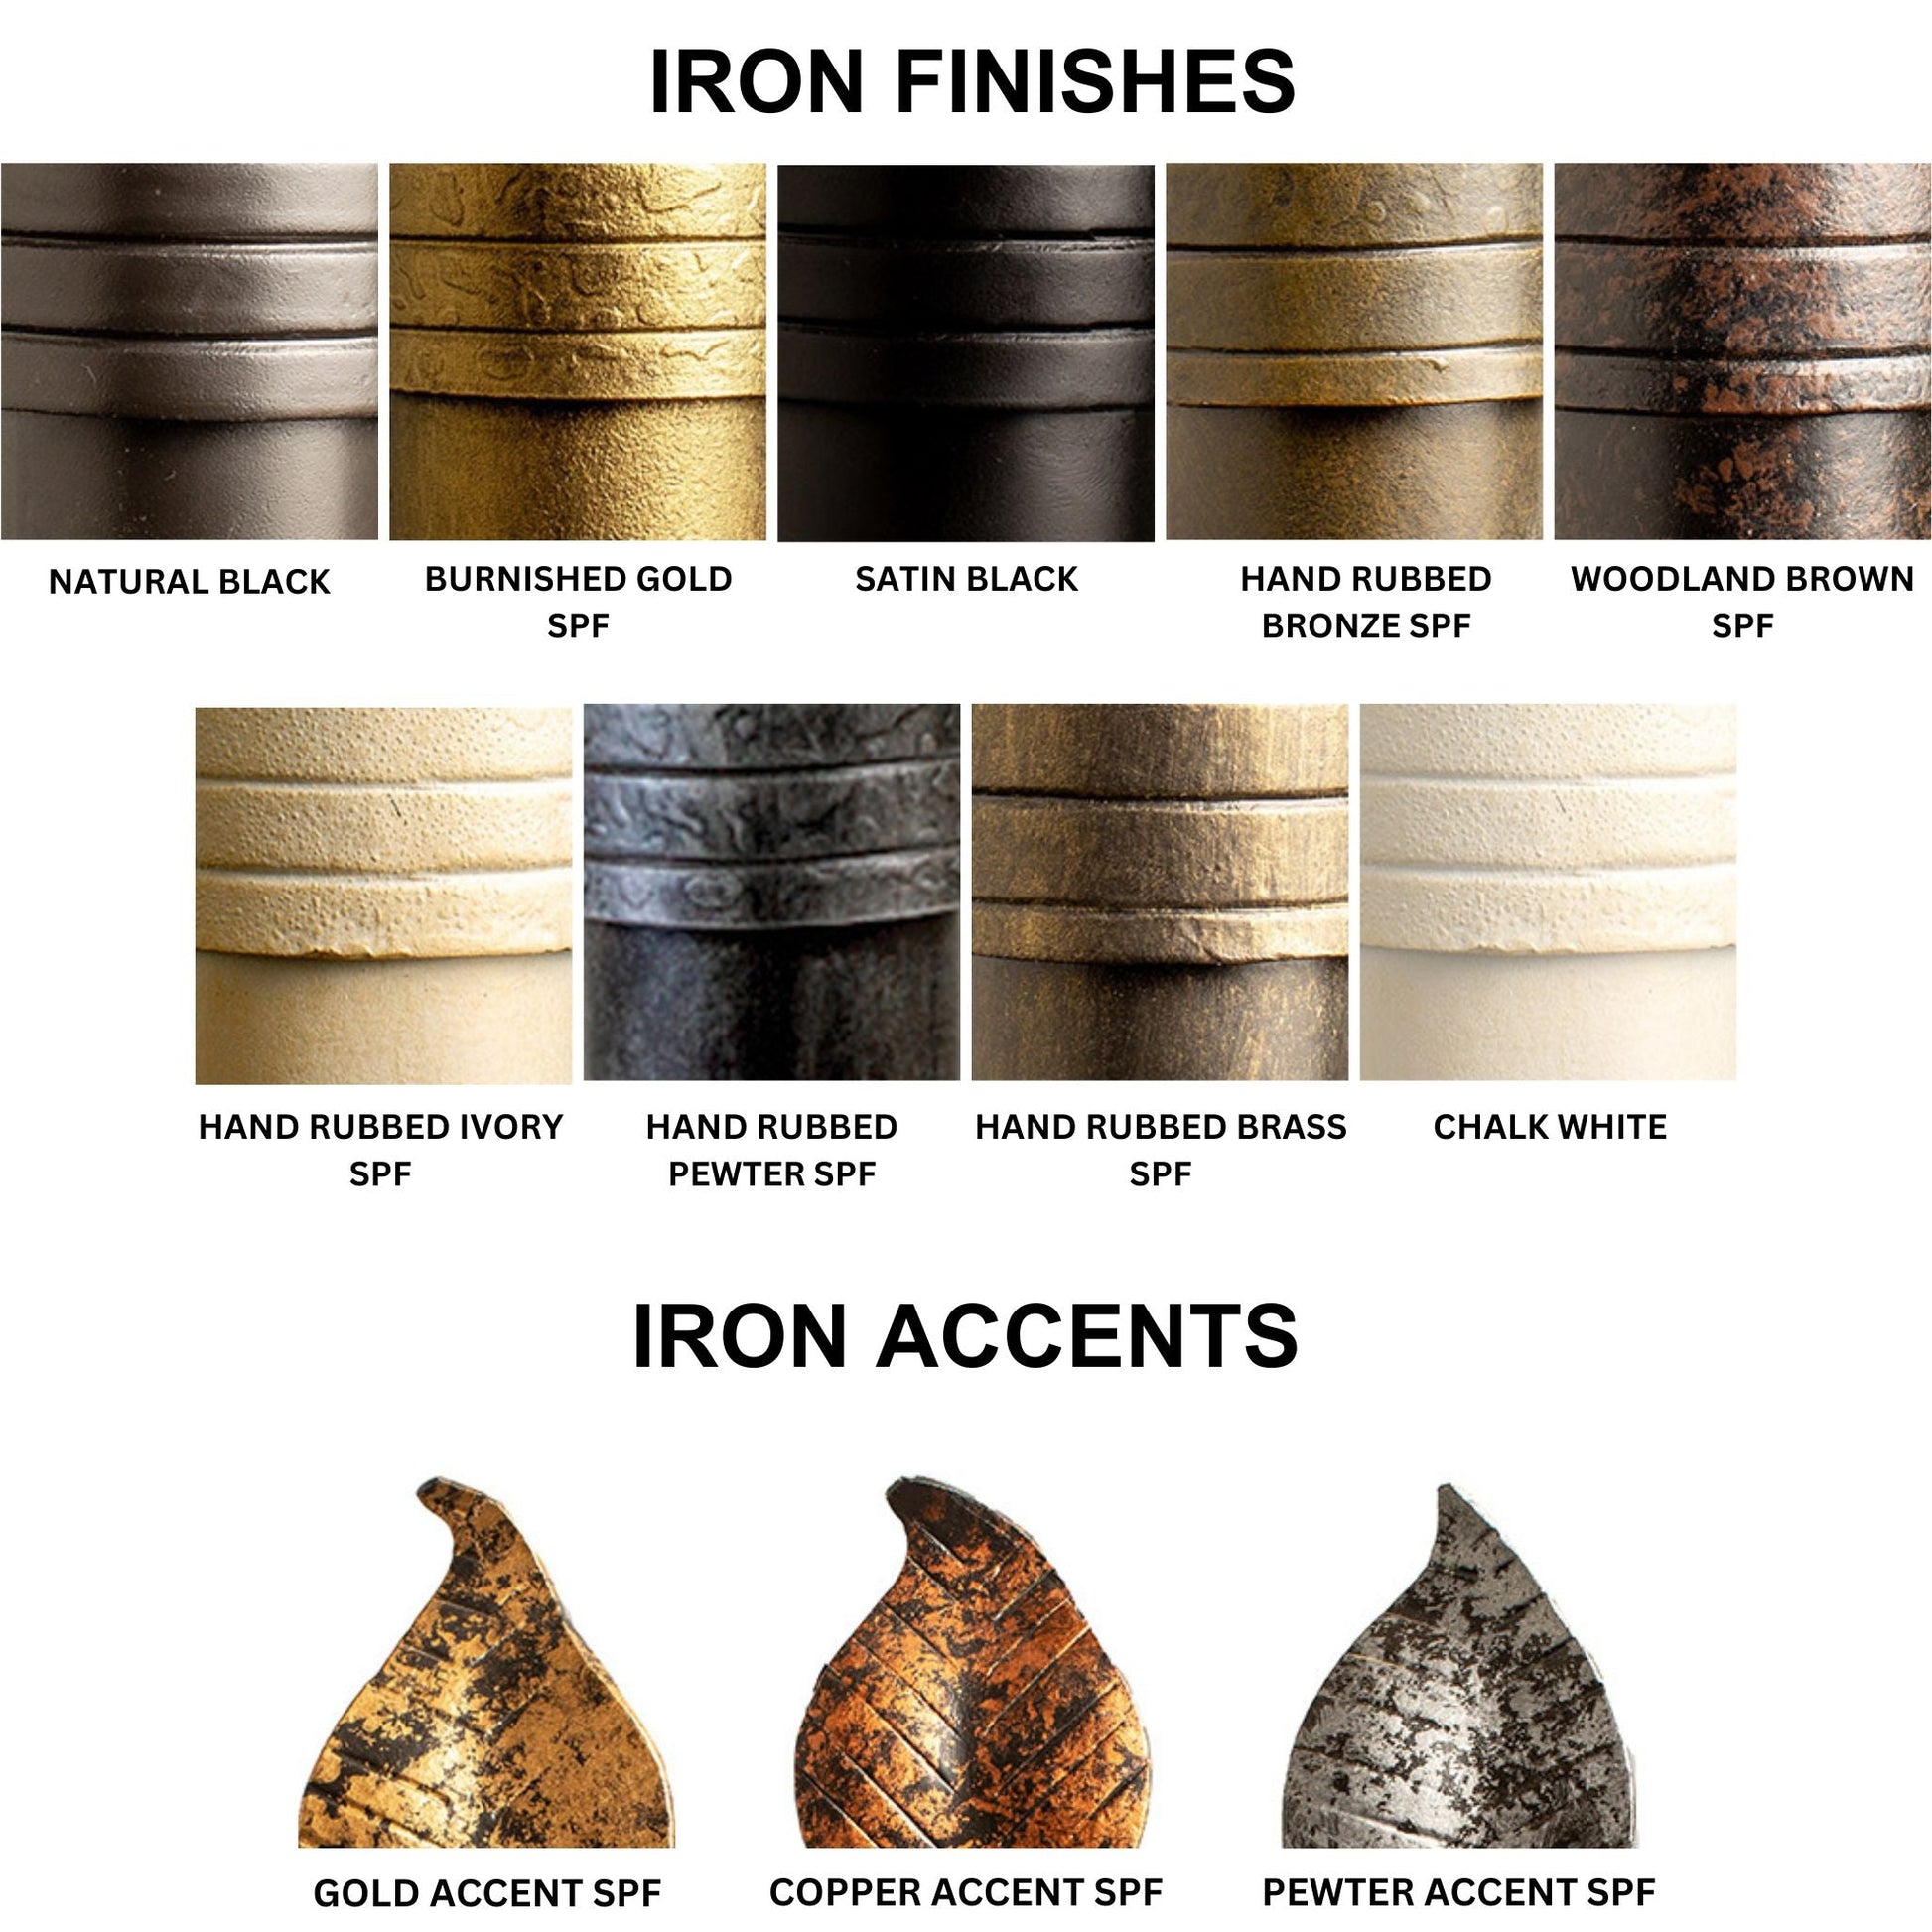 Stone County Ironworks Sassafras 28" 3-Tier Burnished Gold Iron Standing Shelf Base